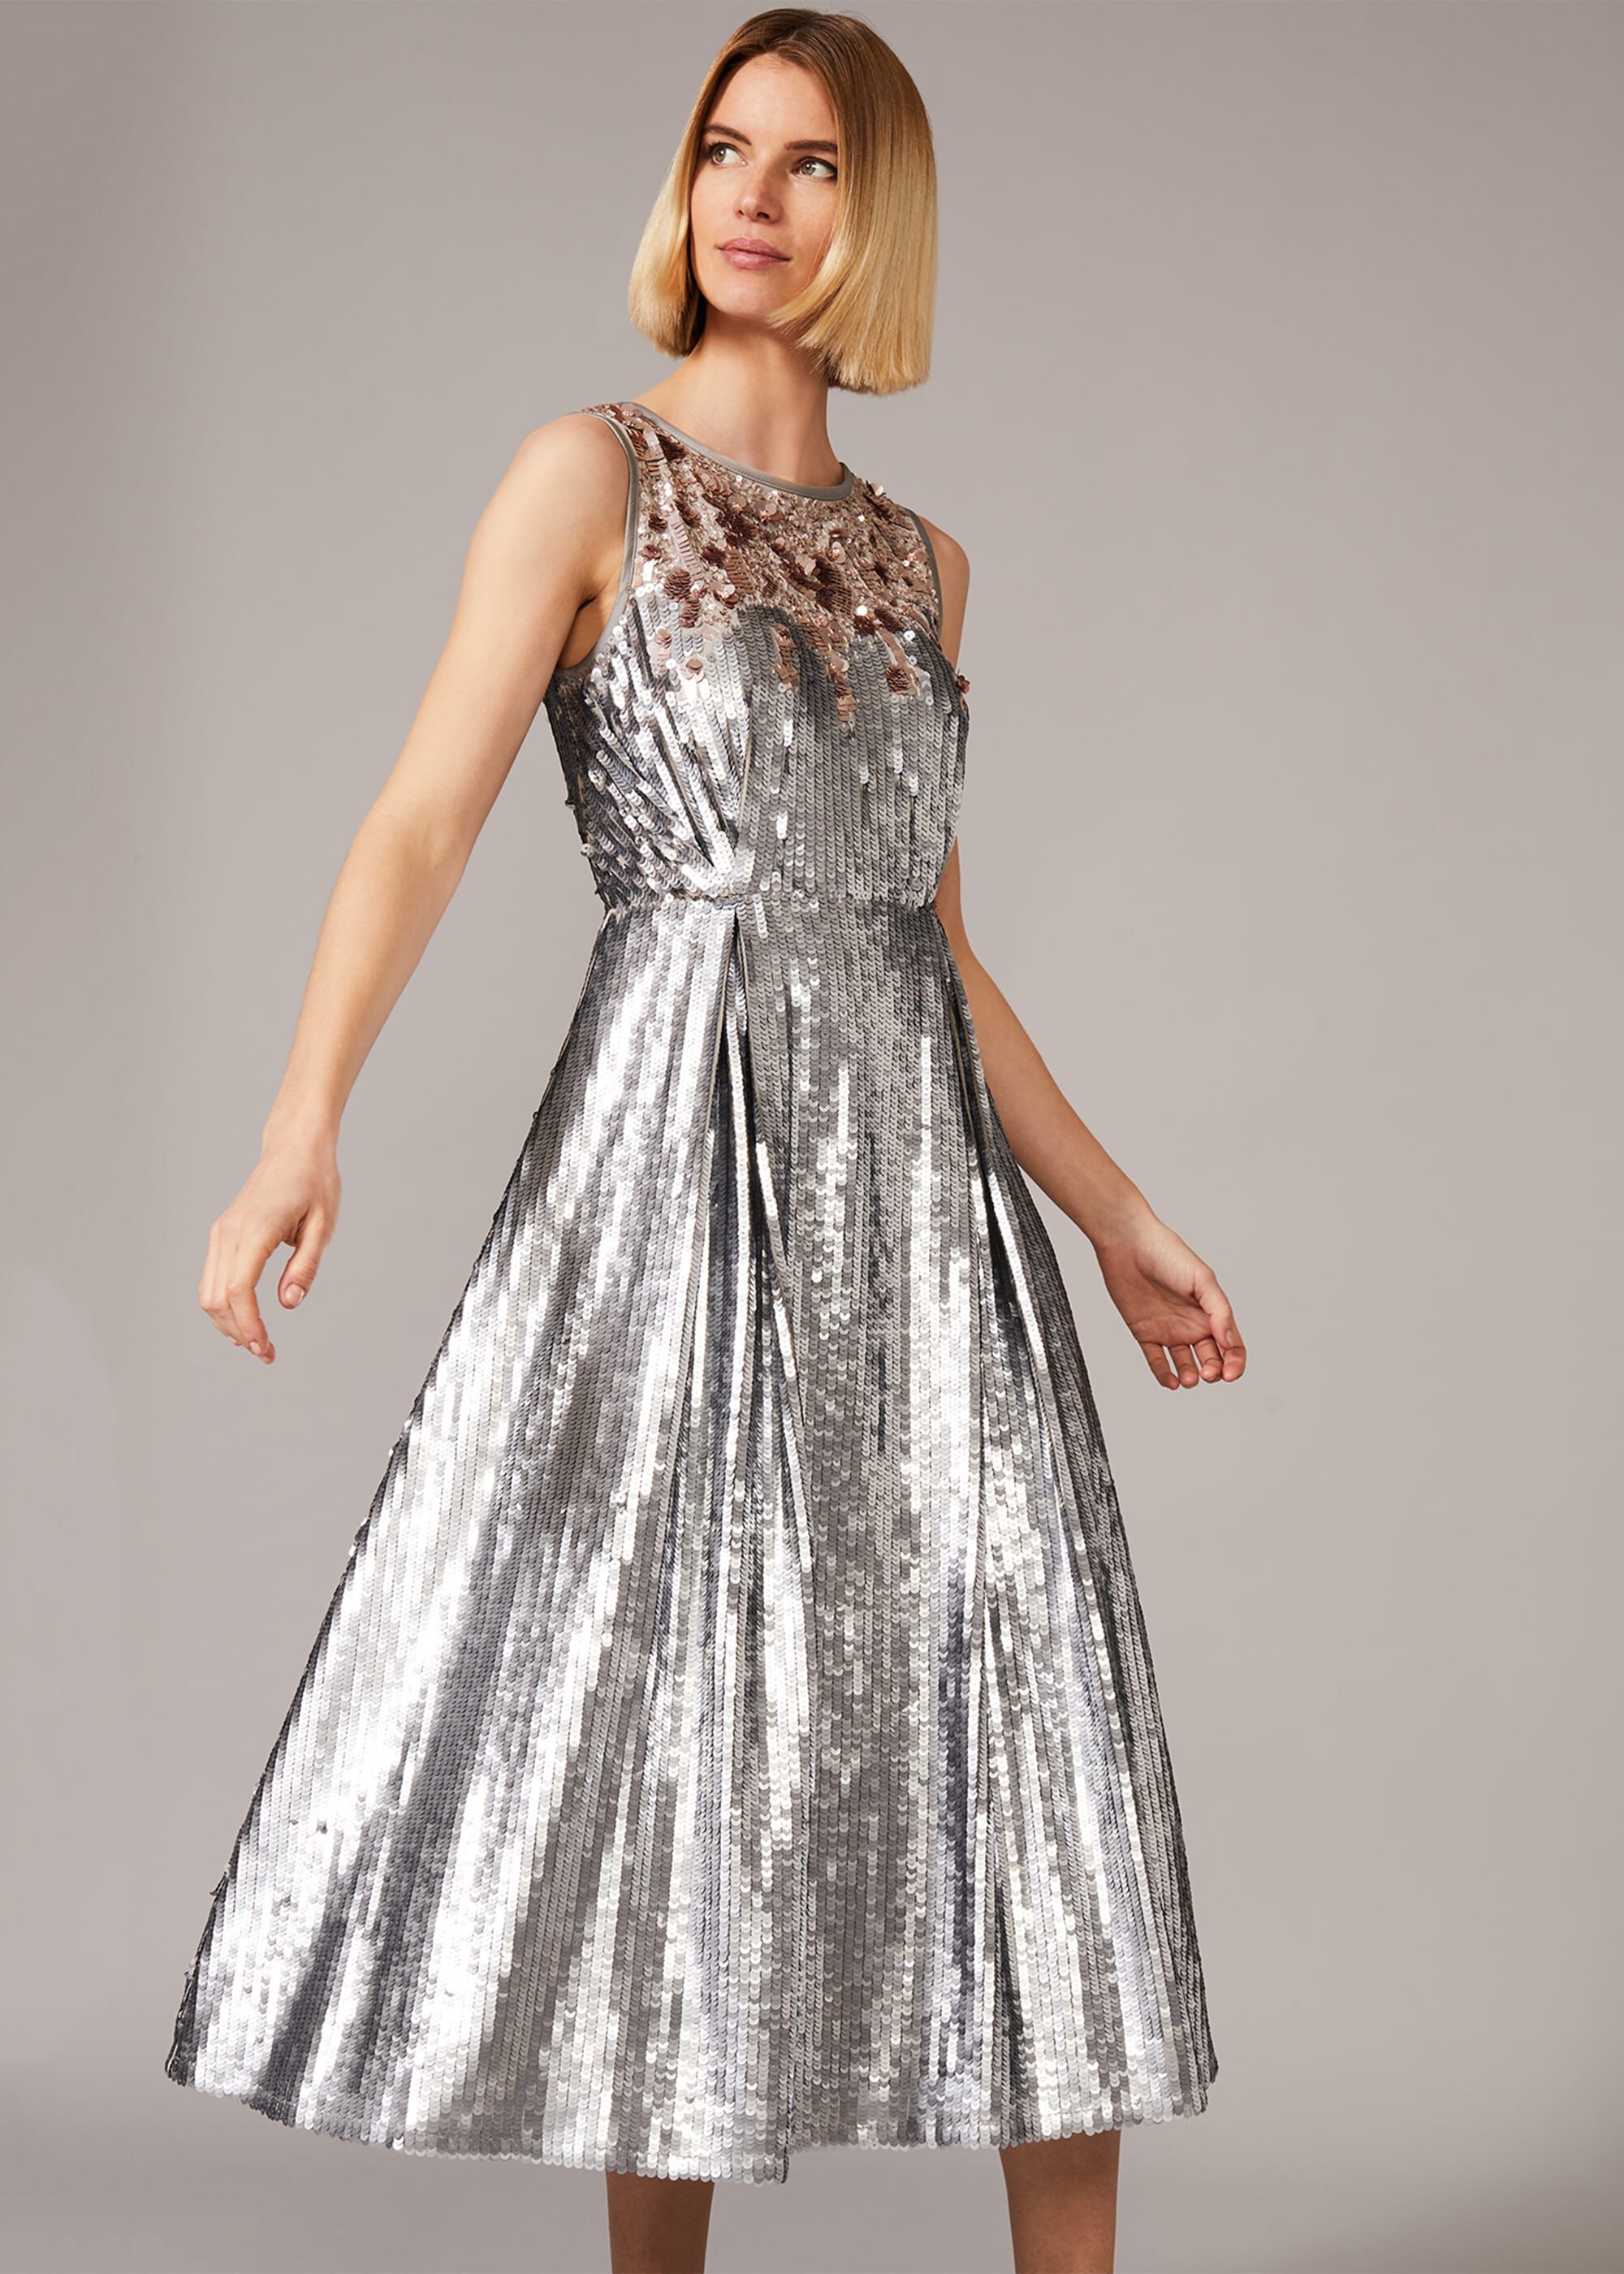 Lainey Shimmer Sequin Midi Dress ...